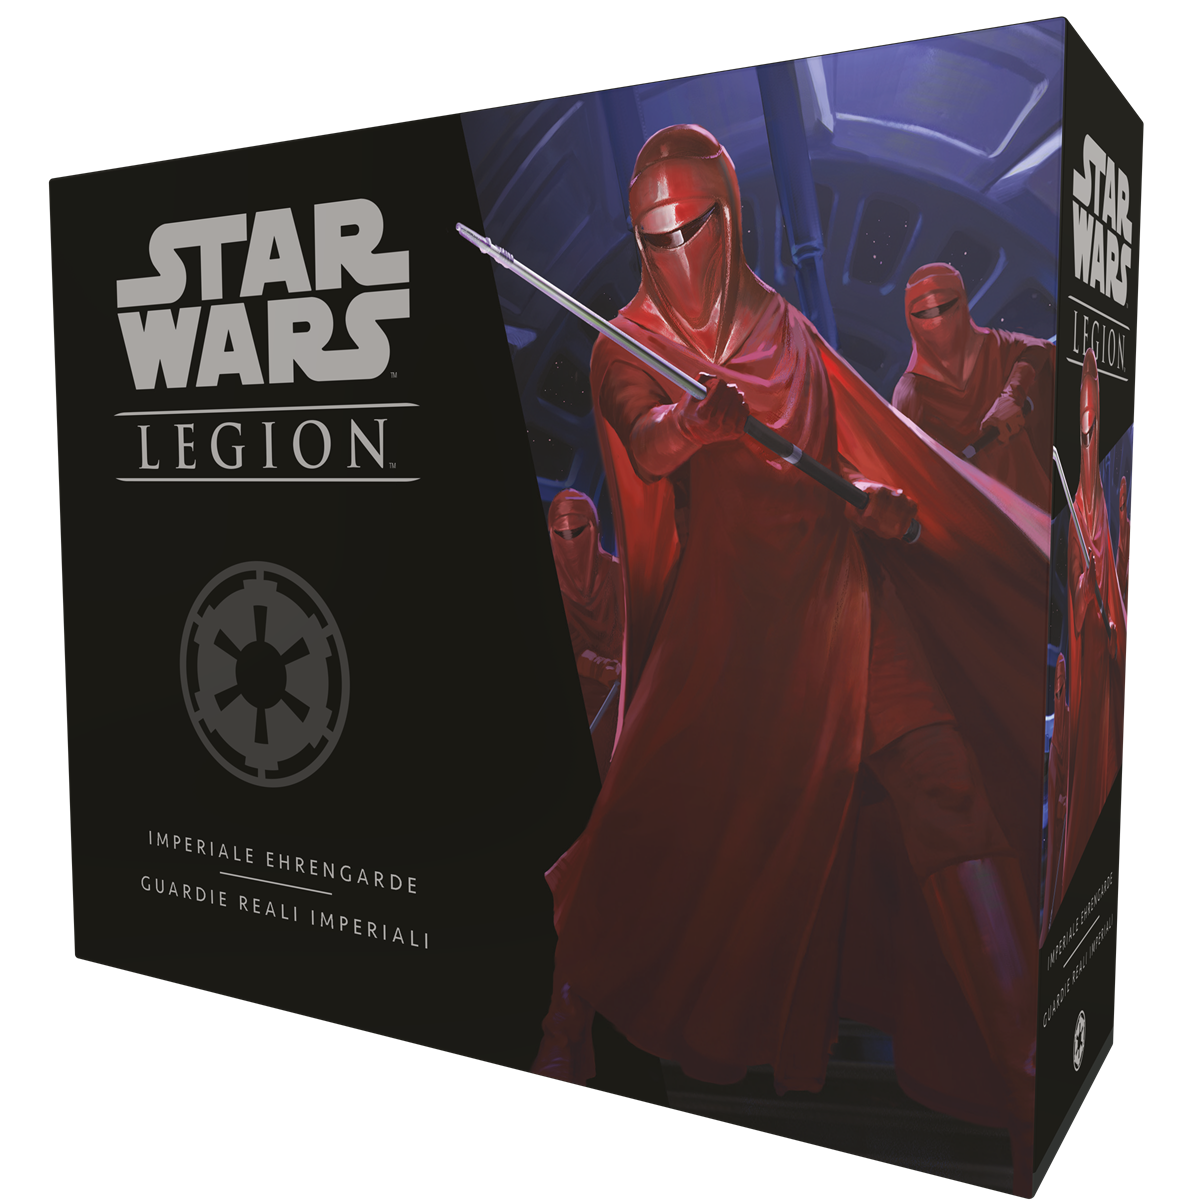 Star Wars: Legion - Imperiale Ehrengarde DE/IT